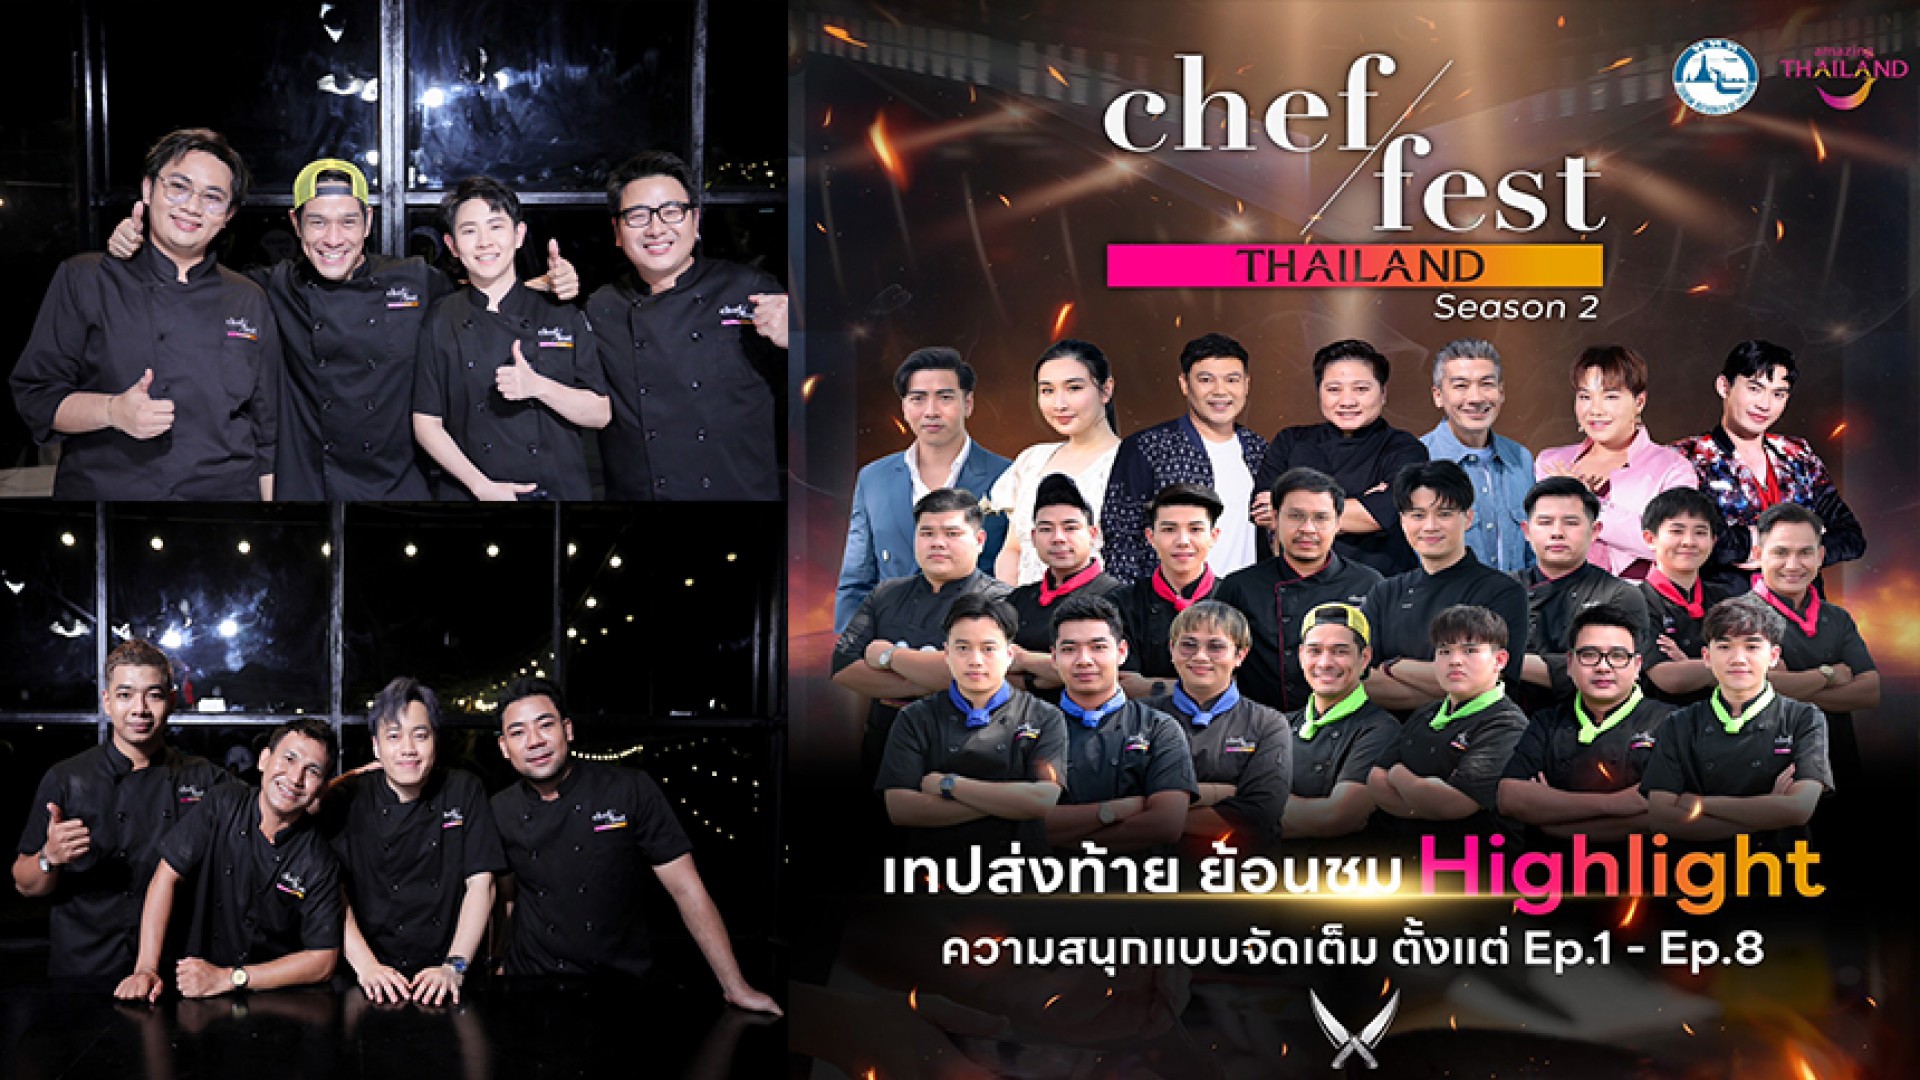 ไฮไลท์ความสนุกของการเฟ้นหาสุดยอดเชฟ Chef Fest Thailand season 2 วันอาทิตย์ที่ 28 เมษายนทาง ช่อง 3